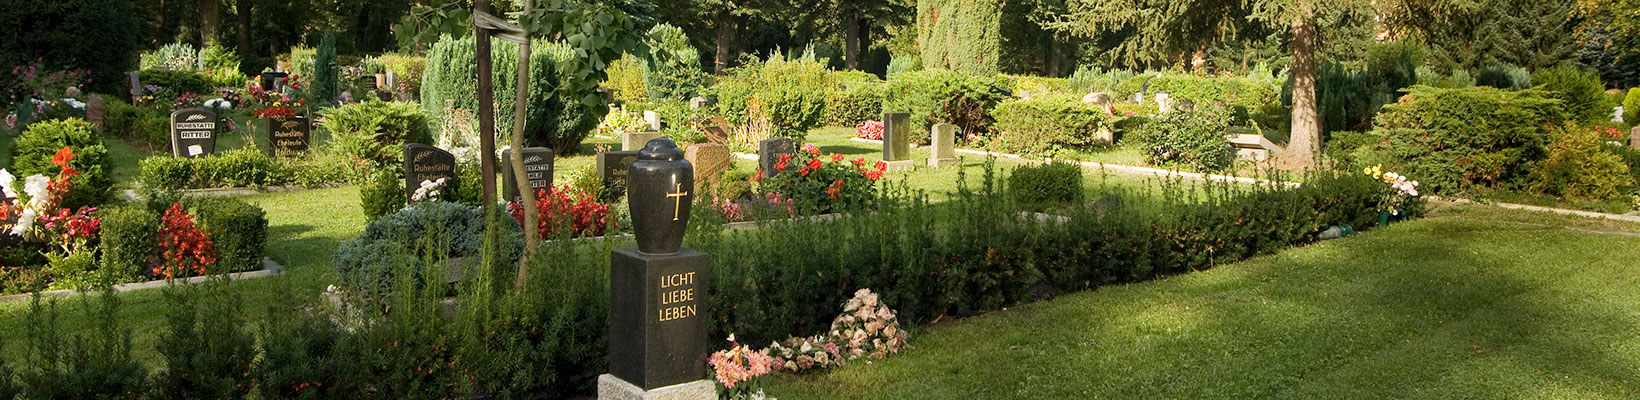 Partnerstellen | Friedhof Segen (Foto © Egbert Schmidt)